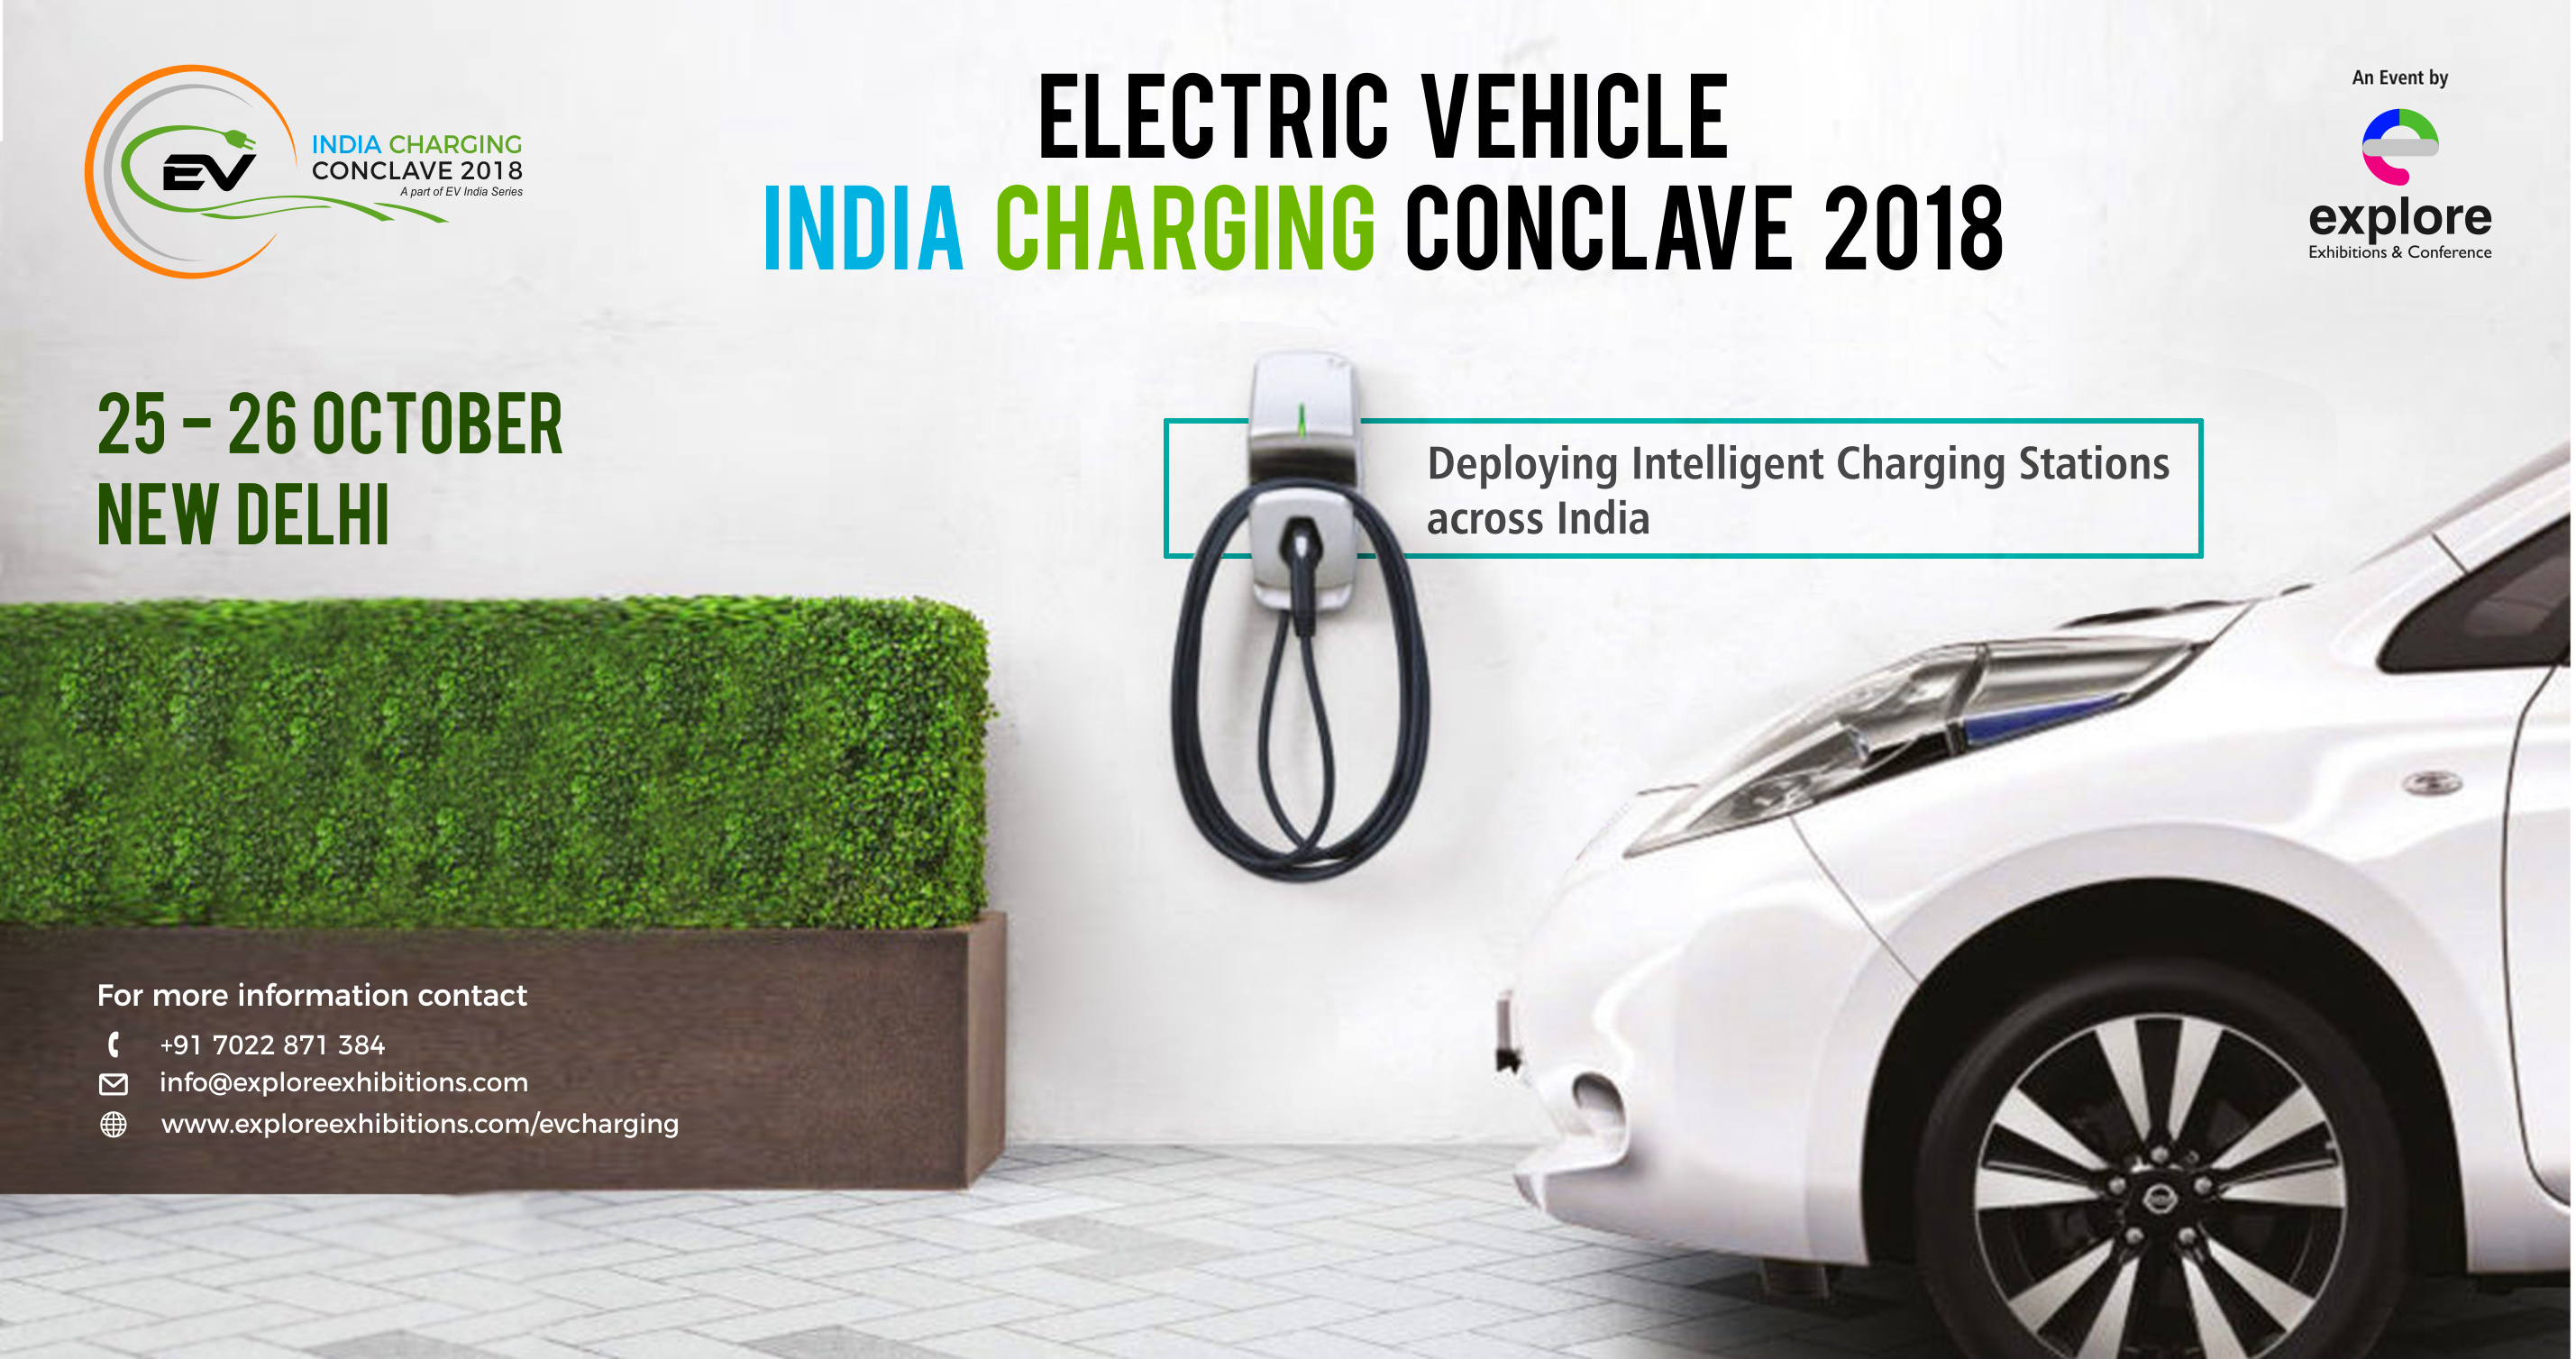 EV INDIA CHARGING CONCLAVE 2018, New Delhi, Delhi, India